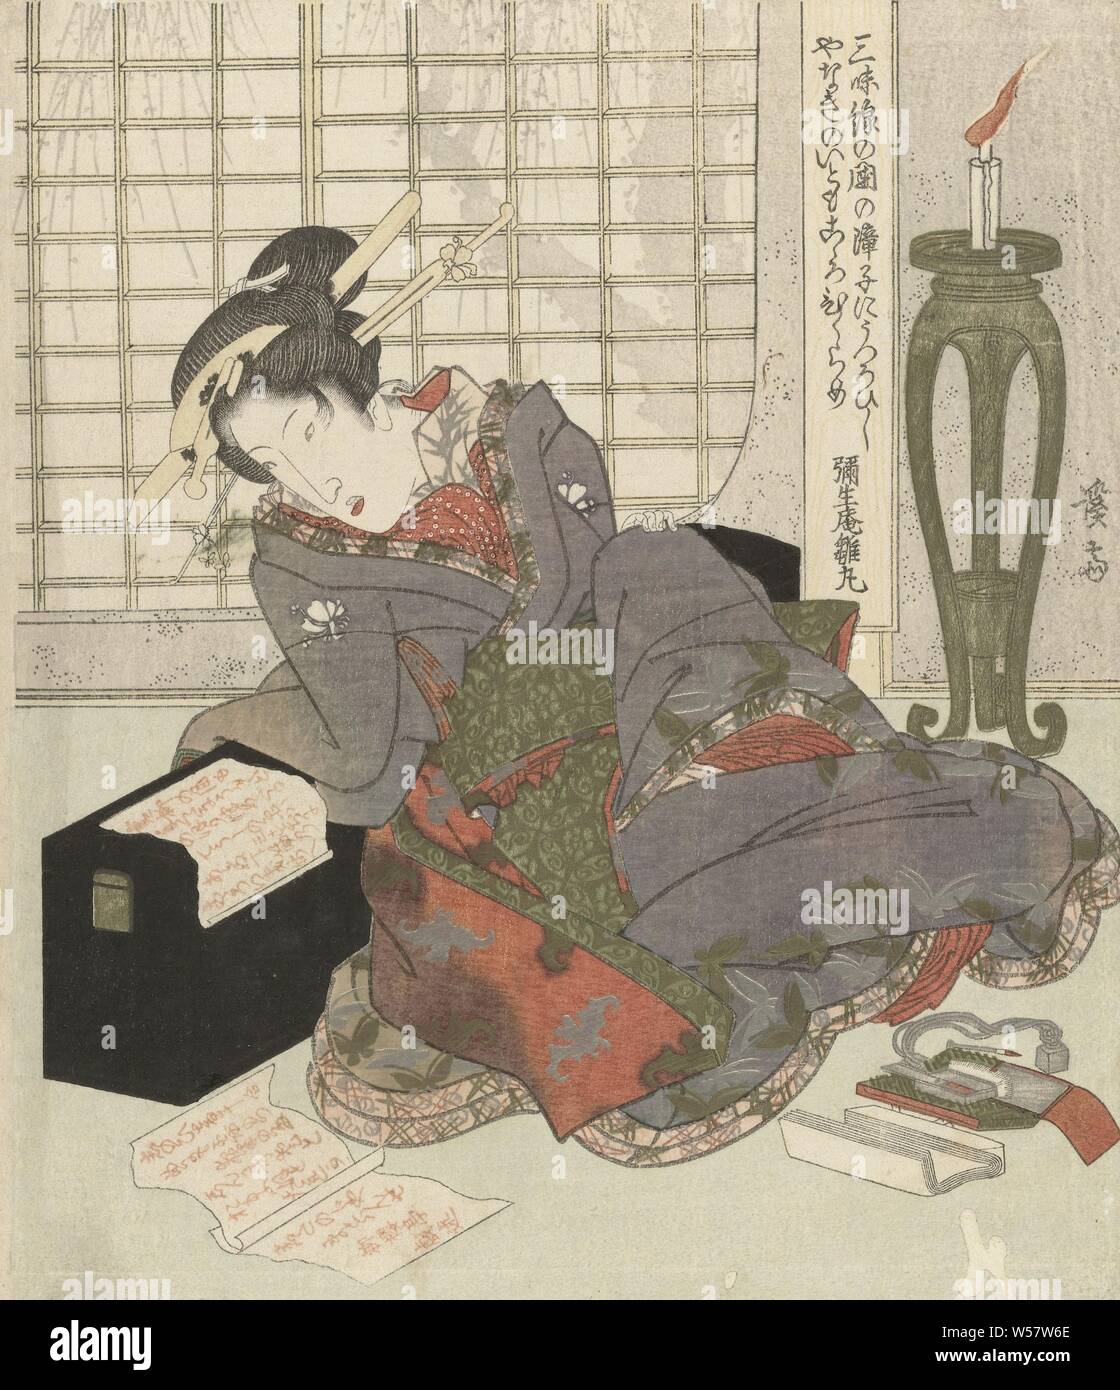 Une geisha s'appuie sur le fort de son shamisen, une geisha lit une lettre à la chandelle, alors qu'elle s'appuie contre le coffre contenant son shamisen (instrument à cordes). Un saule peut être vu dans le jardin au travers du papier (shoji) windows. Le poème sur le mur compare les cordes du shamisen avec le 'threads' du saule. Deux textes écrits par deux auteurs différents, dans les lettres, courtisane, Keisai Eisen, black mist (mentionné sur l'objet), Japon, 1825 - 1829, le papier, le polissage, h 211 mm × W 184 mm Banque D'Images